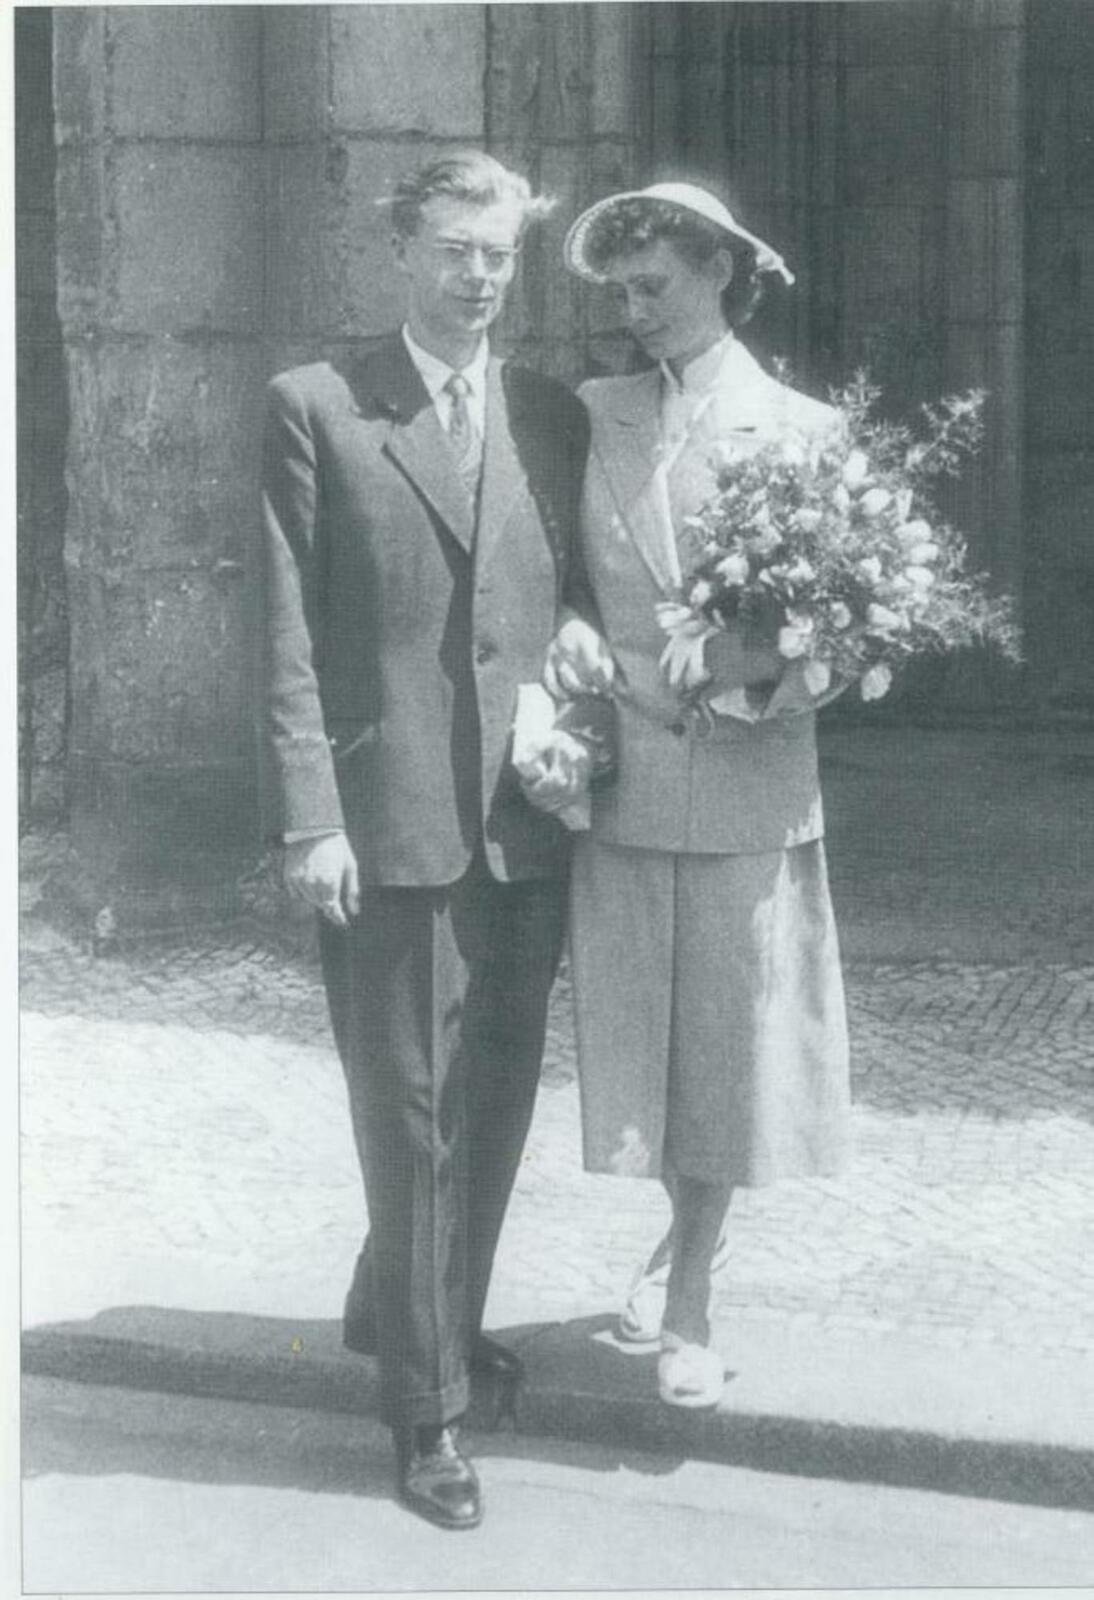 Němcové manželství s Jiřím vydrželo 69 let do jeho smrti v roce 2001. I přes to se Němcovi v roce 1972 narodil nemanželský syn Tobiáš.